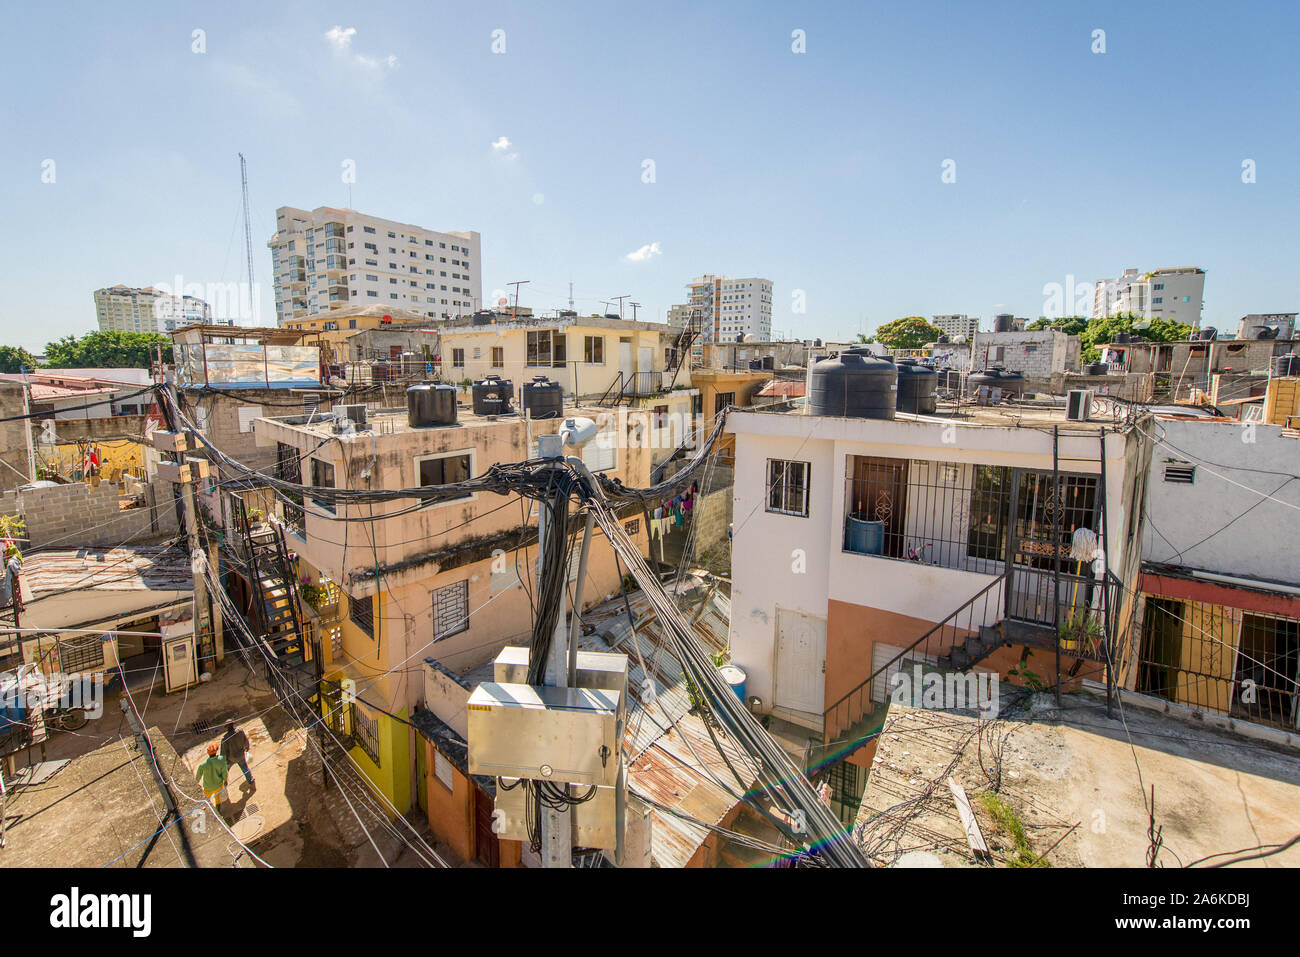 Santo Domingo, Repubblica Dominicana; 13 aprile 2014: vista sui tetti di alcune case di poveri, vi è molto caos mediante i fili di poli elettrici Foto Stock